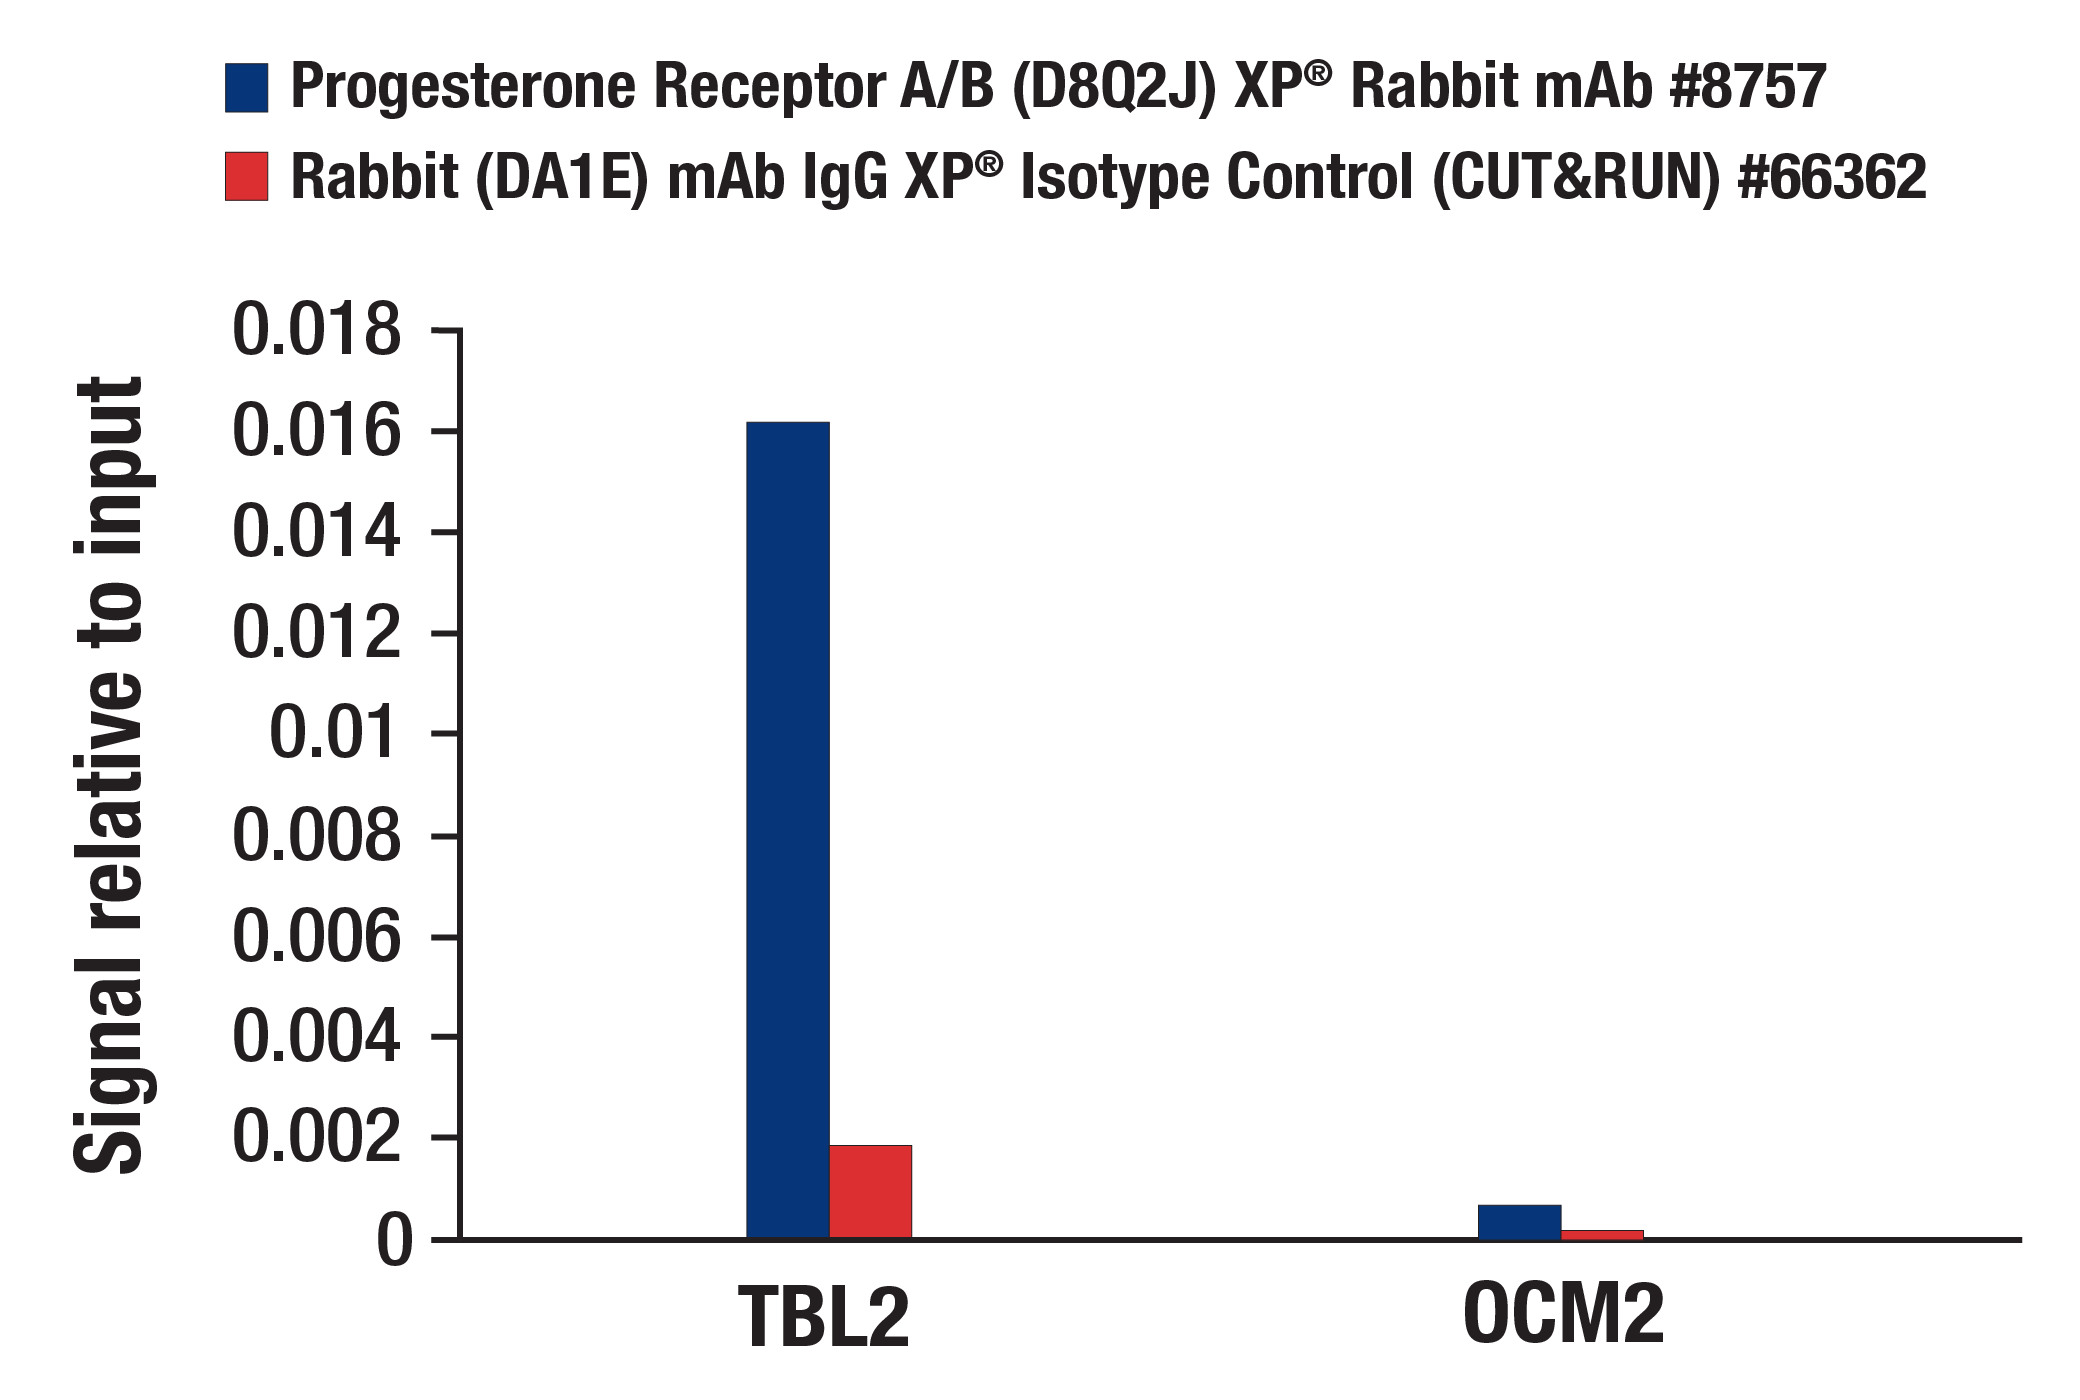  Image 17: Progesterone Receptor Signaling Antibody Sampler Kit